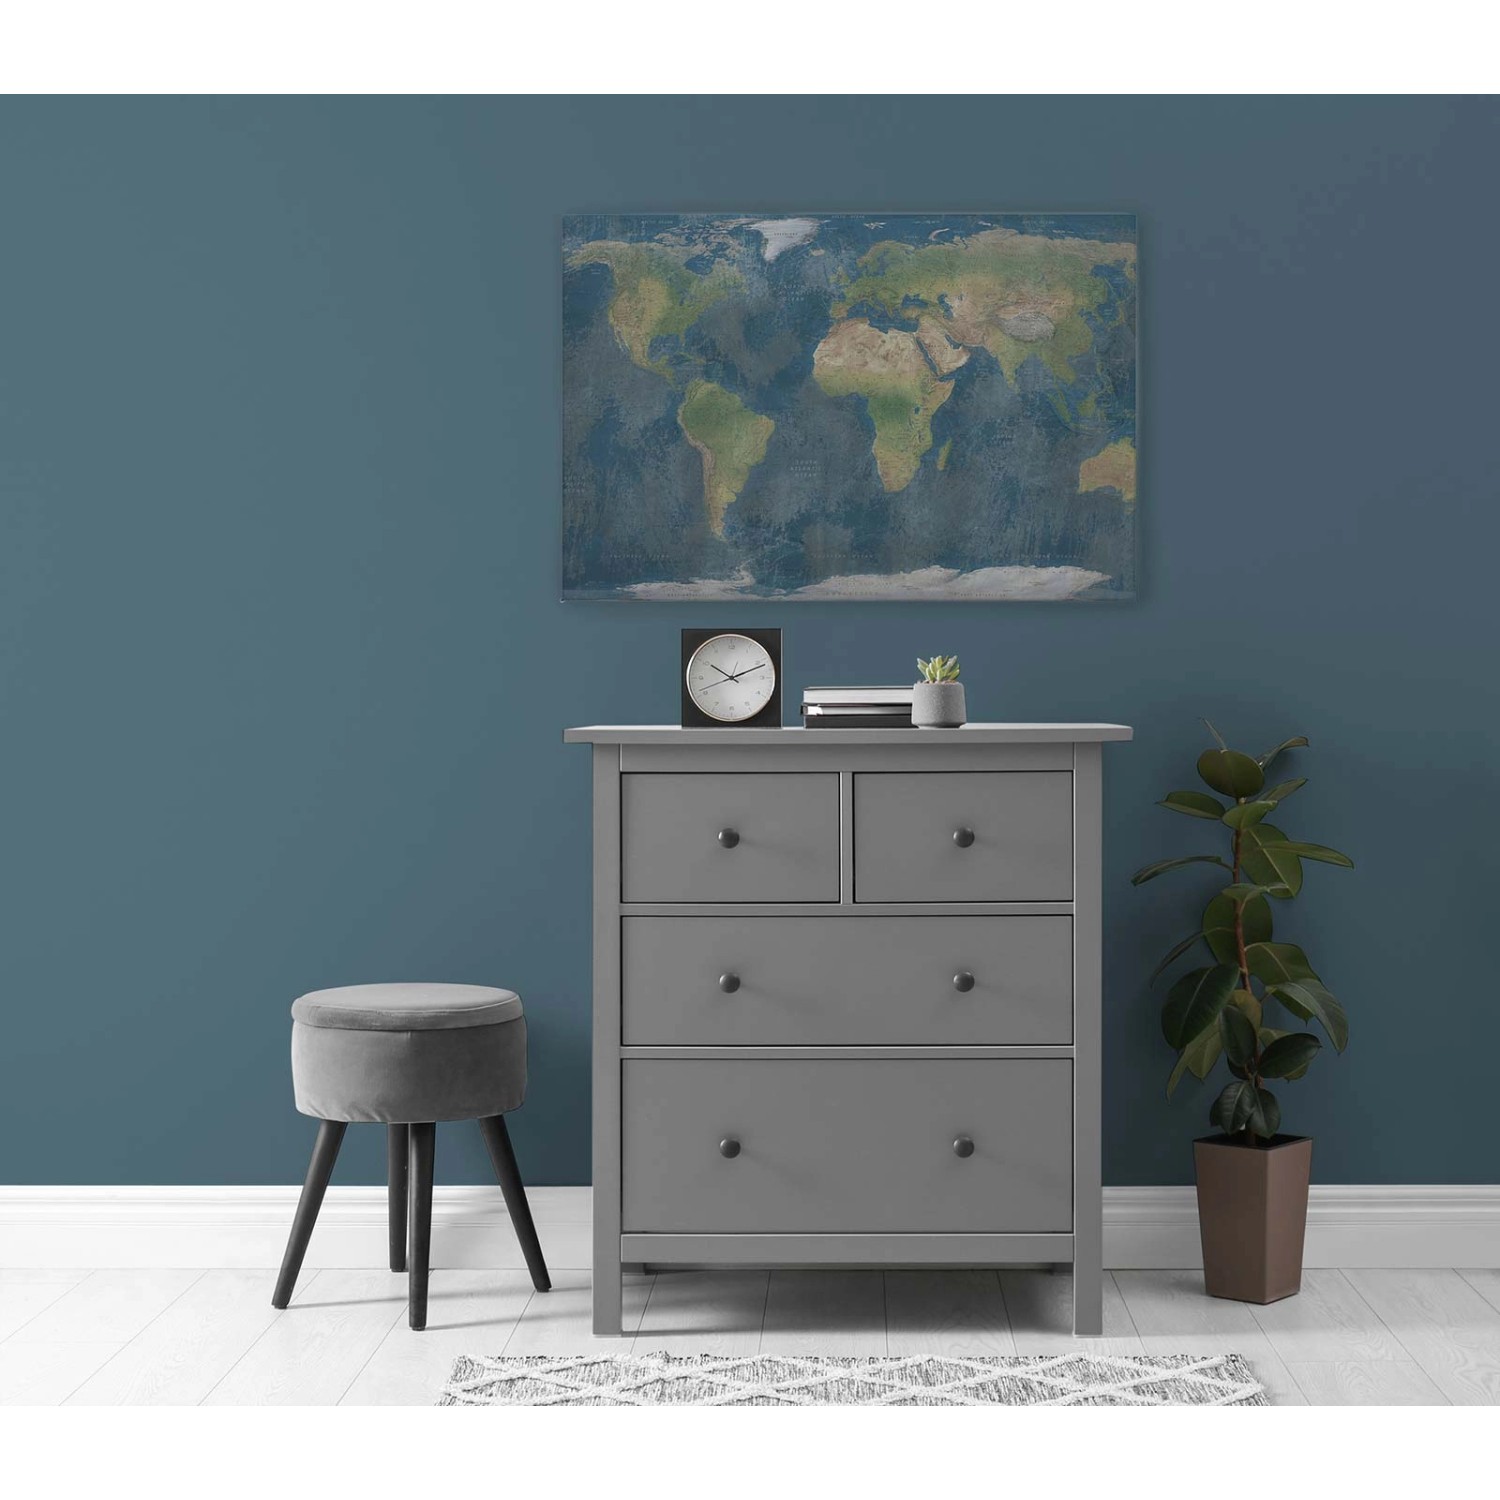 Bricoflor Leinwandbild Weltkarte Blau Grün Deko Wandbild Mit Landkarte Ideal Für Büro Und Wohnzimmer Leinwand 90 X 60 Cm